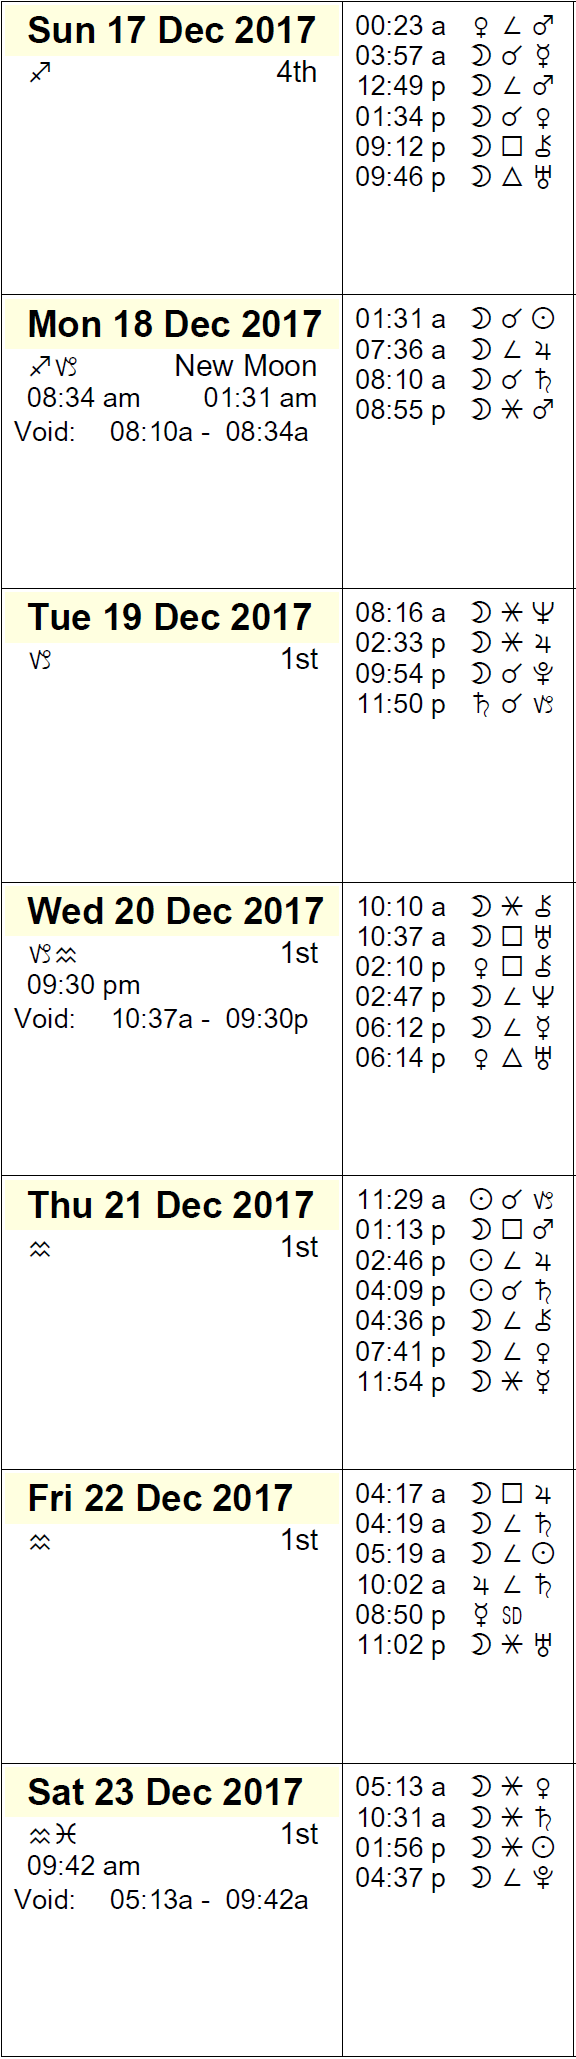 This Week in Astrology Calendar: December 17-23, 2017